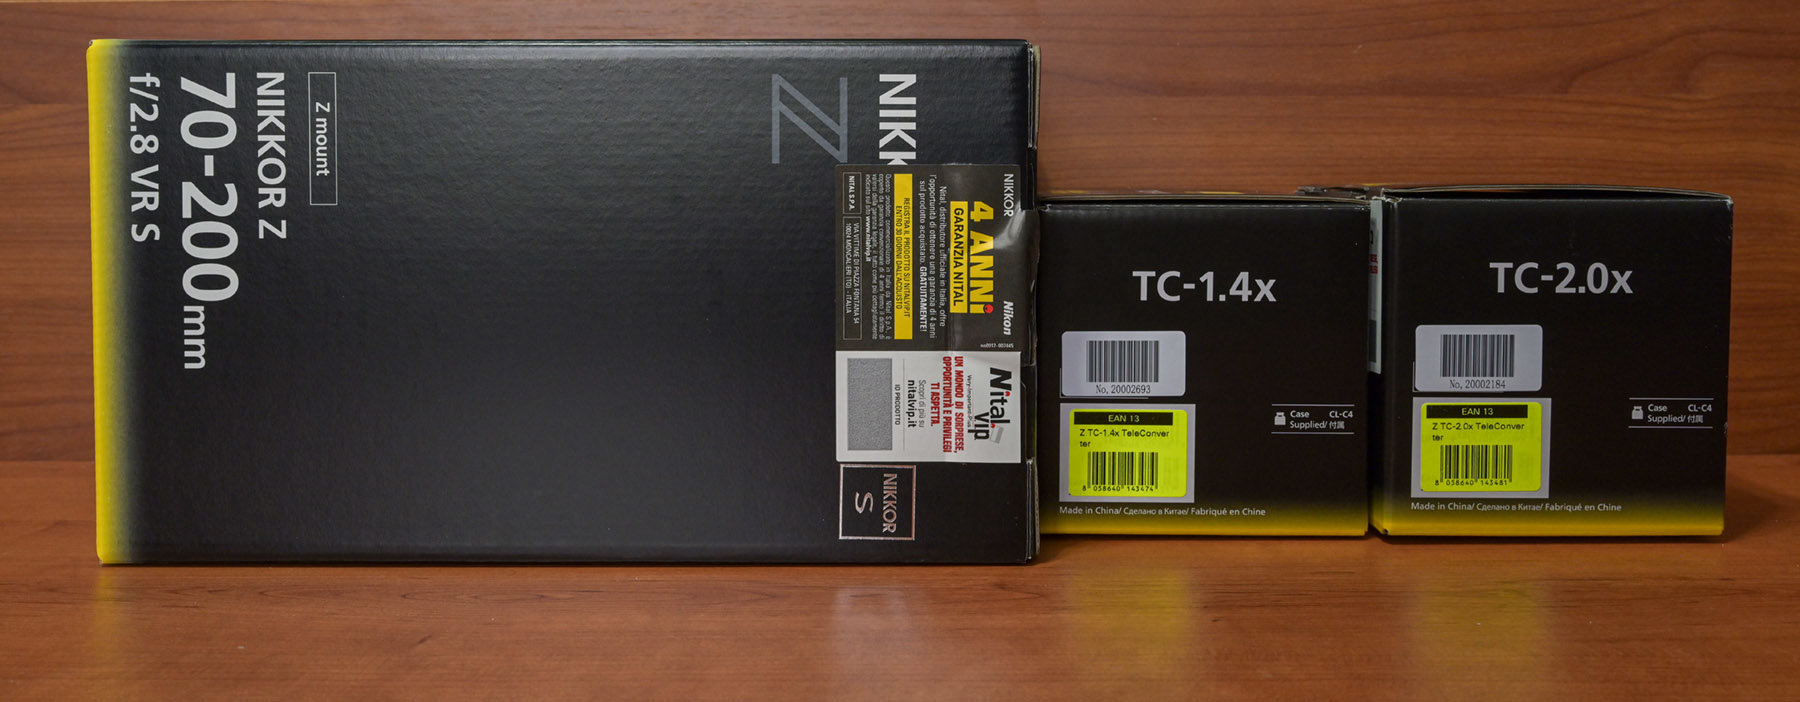 Maggiori informazioni su "Nikkor Z 70-200/2.8 S e TC 1.4x/TC 2.0x : unboxing"